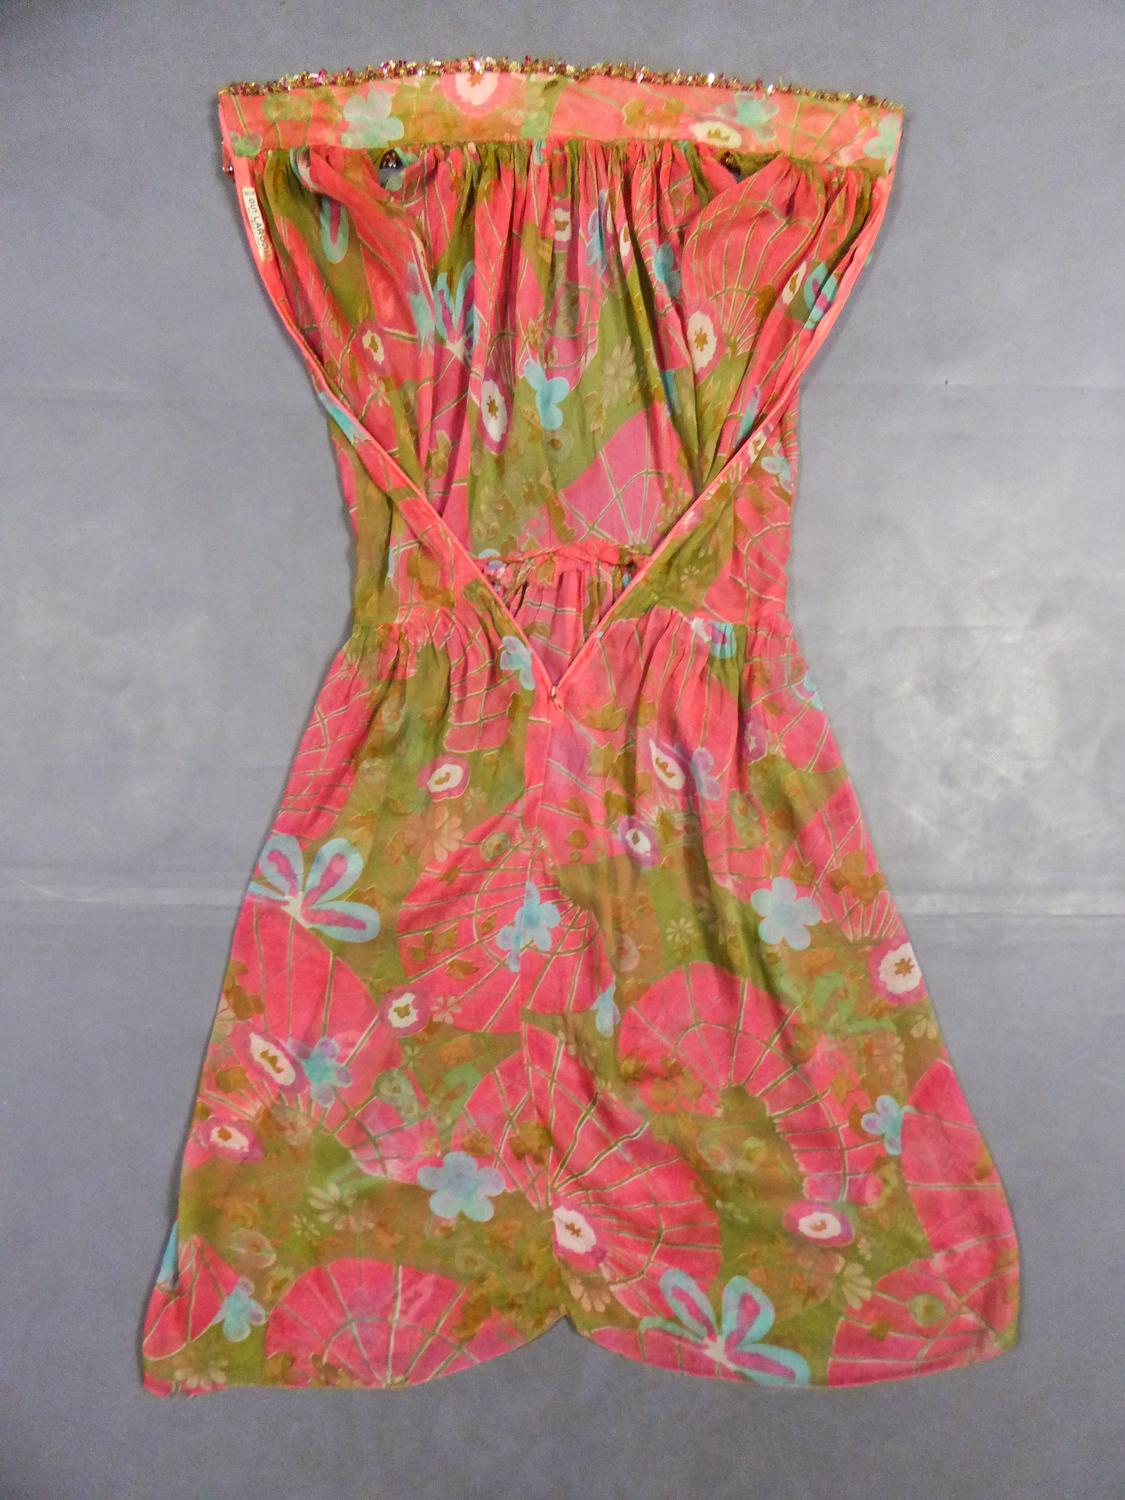 Ca. 1965/1970
Frankreich

Wunderschönes Abendkleid von Guy Laroche aus bedrucktem Seidenkrepp aus den Jahren 1965/1970. Ärmelloses Kleid mit hohem Mandarinkragen und Reißverschluss im Rücken, dicht bestickt mit Pailletten, Perlen und schillernden